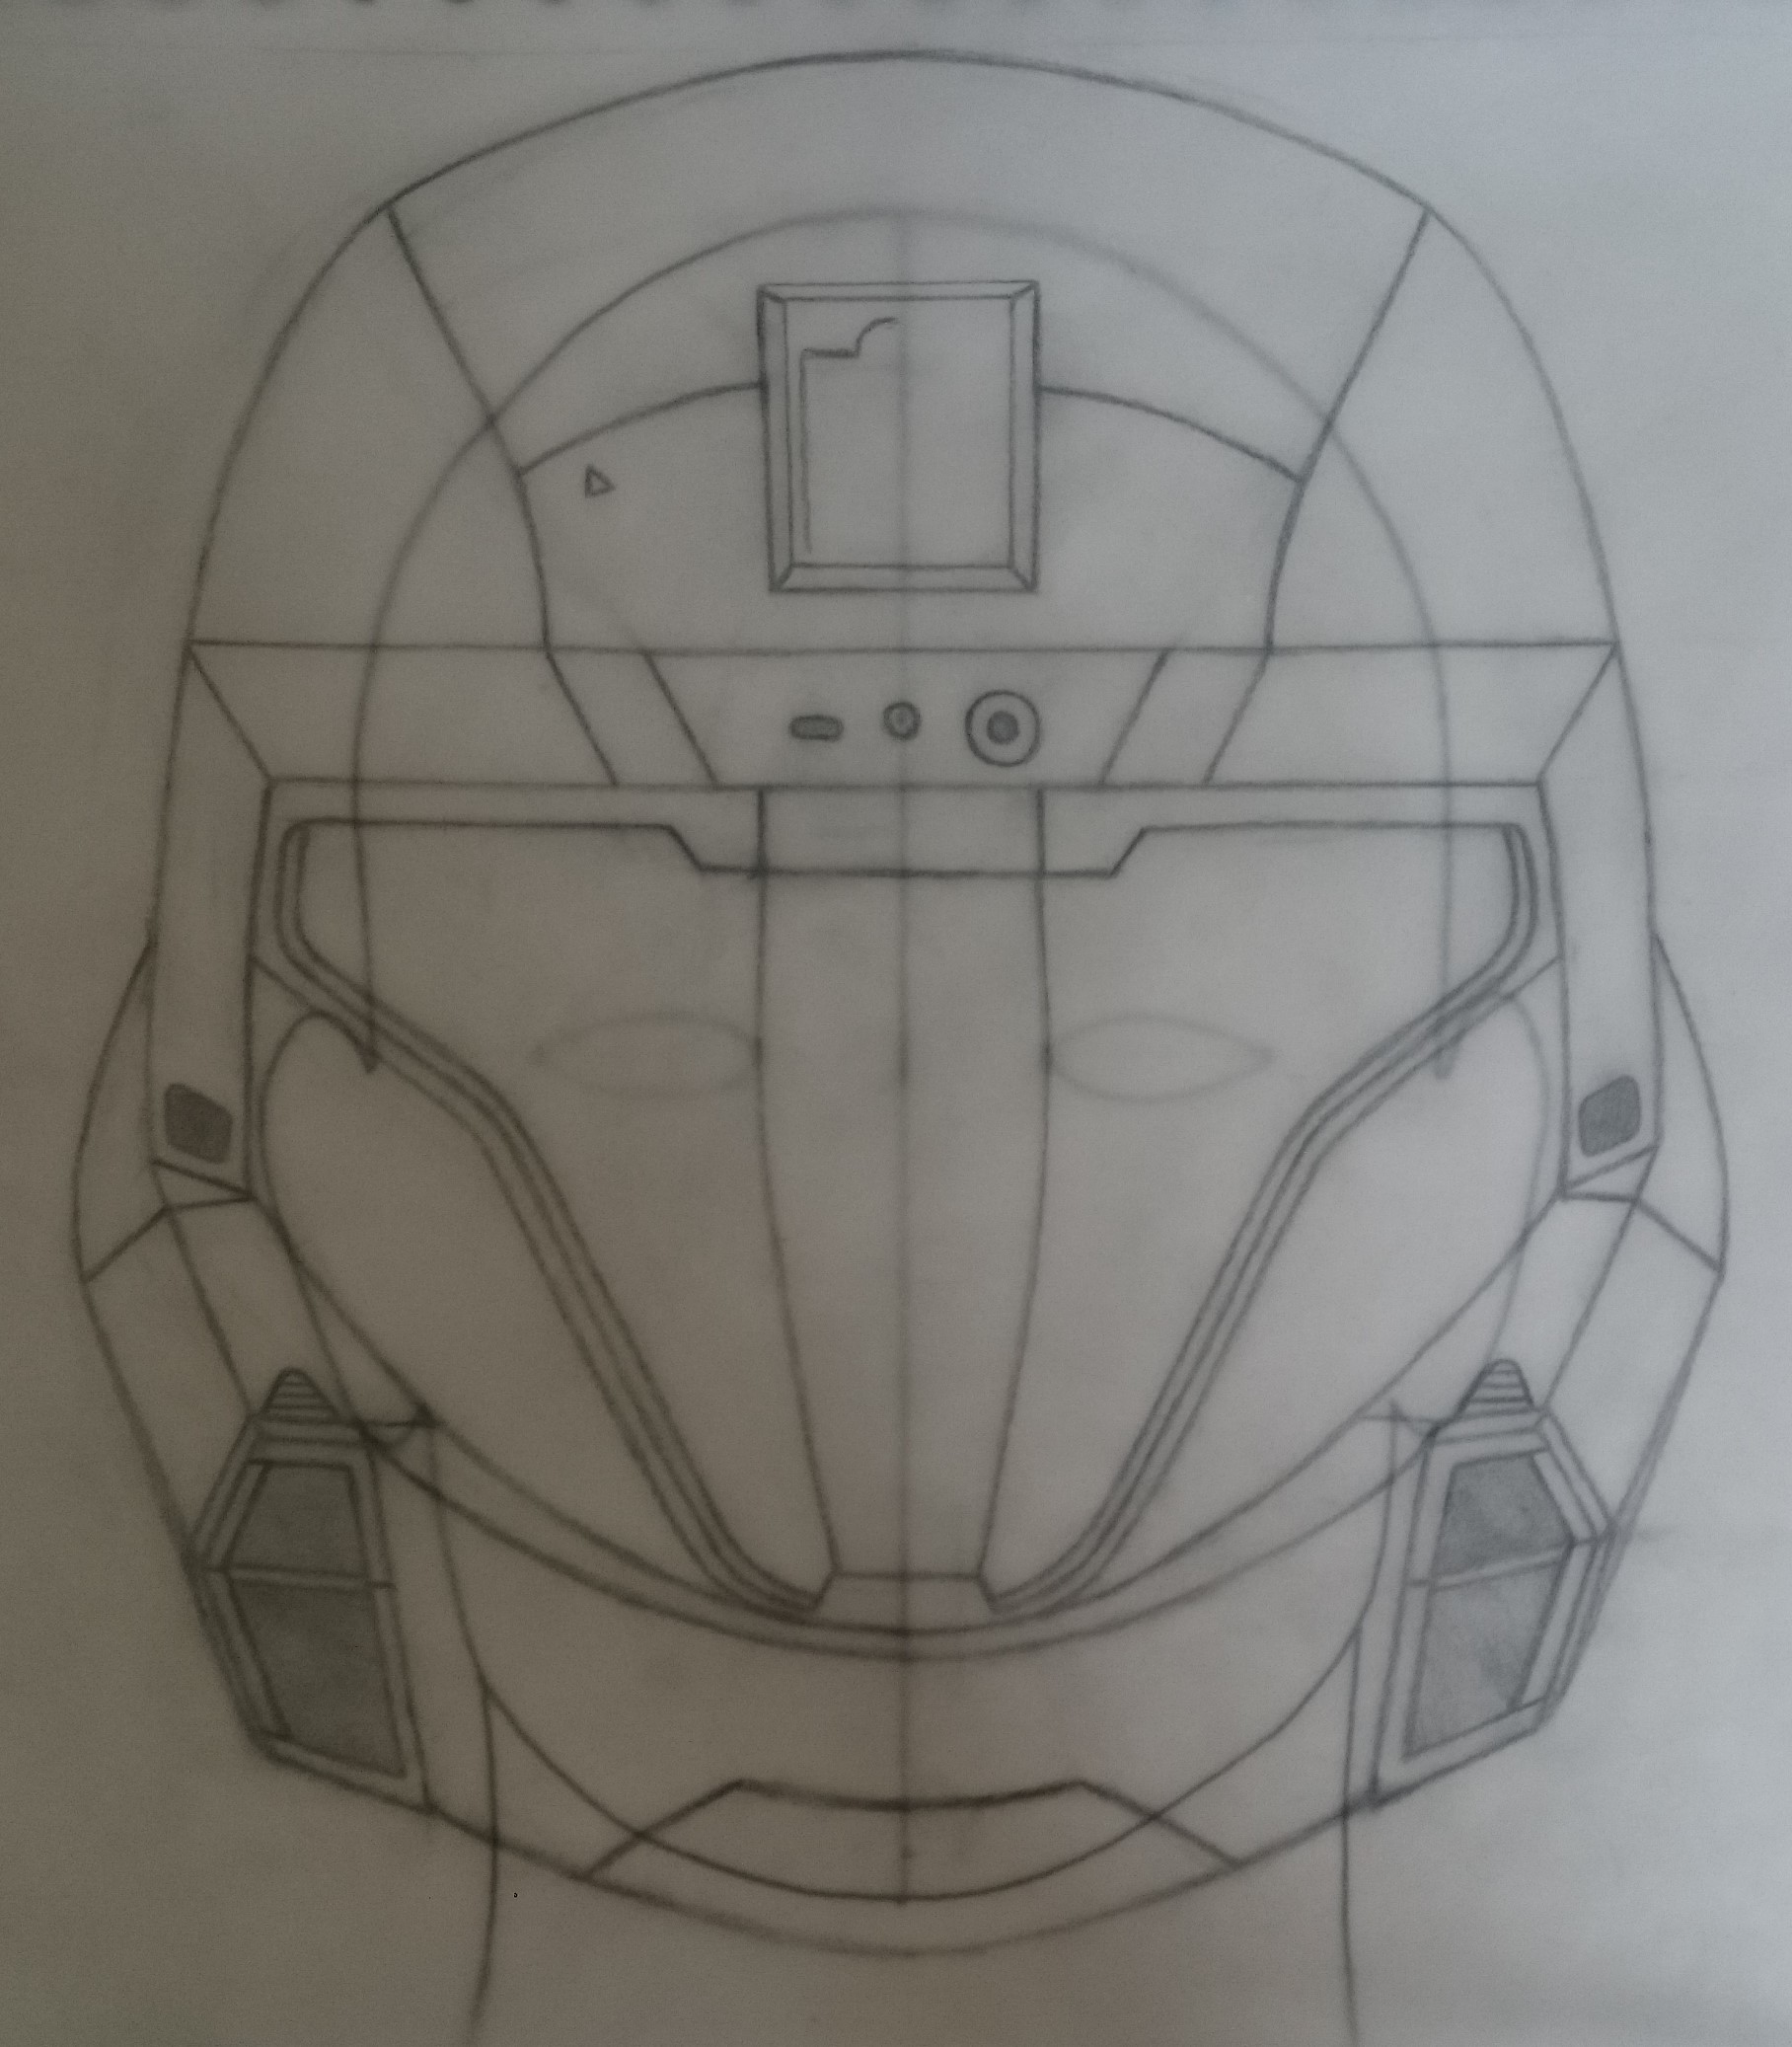 futuristic helmet drawing